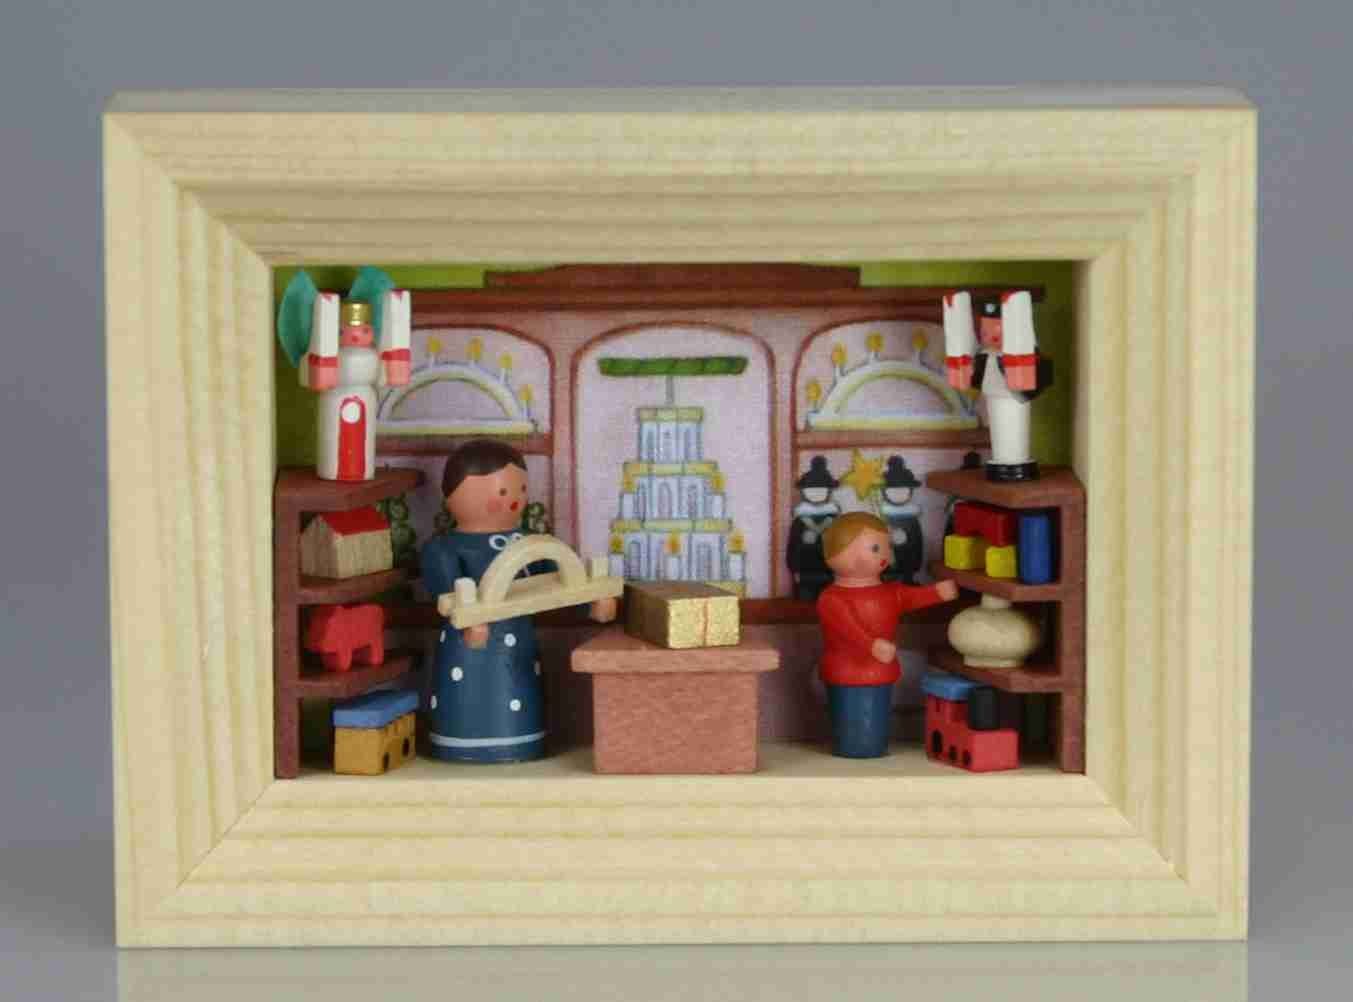 Stübelmacher Gunter Flath Weihnachtsfigur Miniatur im Rähmchen Spielzeugladen | Dekofiguren